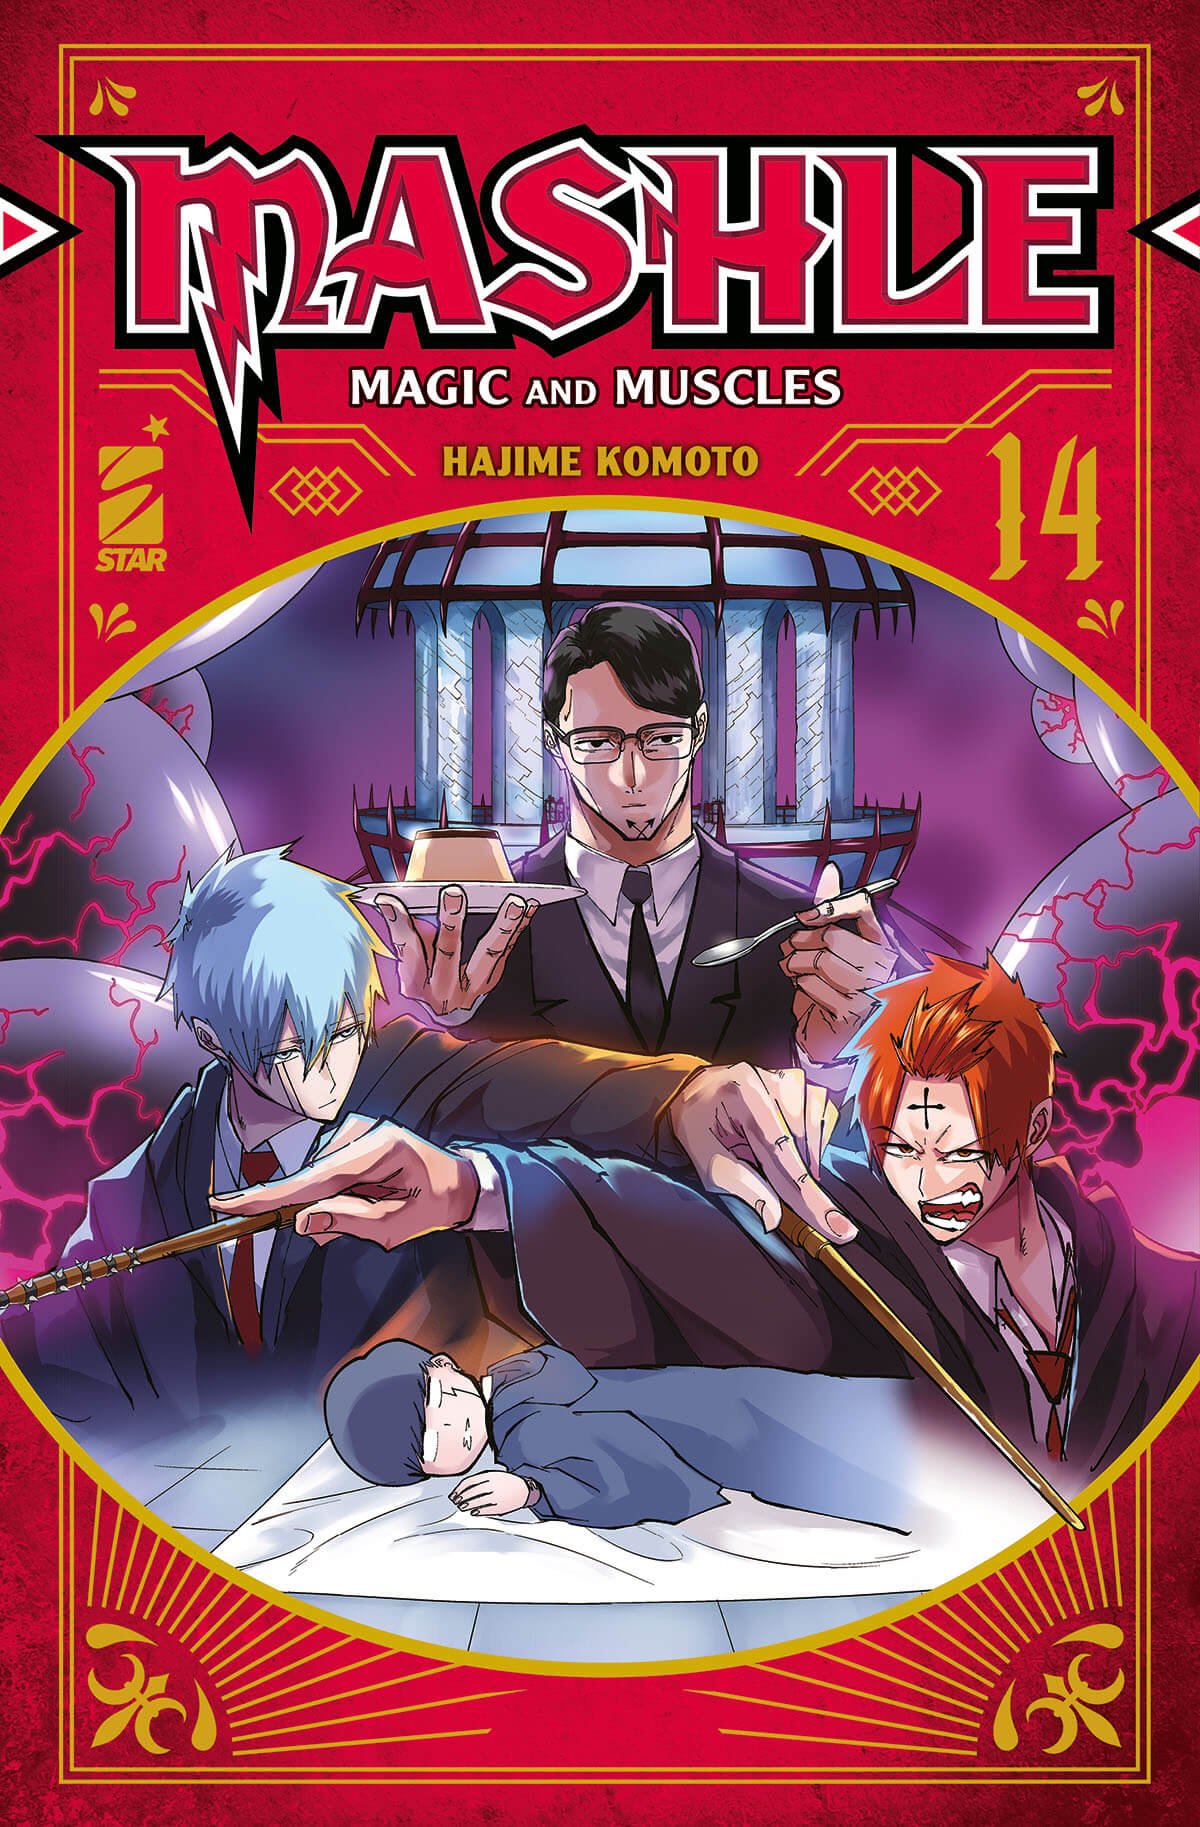 Mashle 14, parmi les sorties mangas Star Comics du 20 décembre 2023.